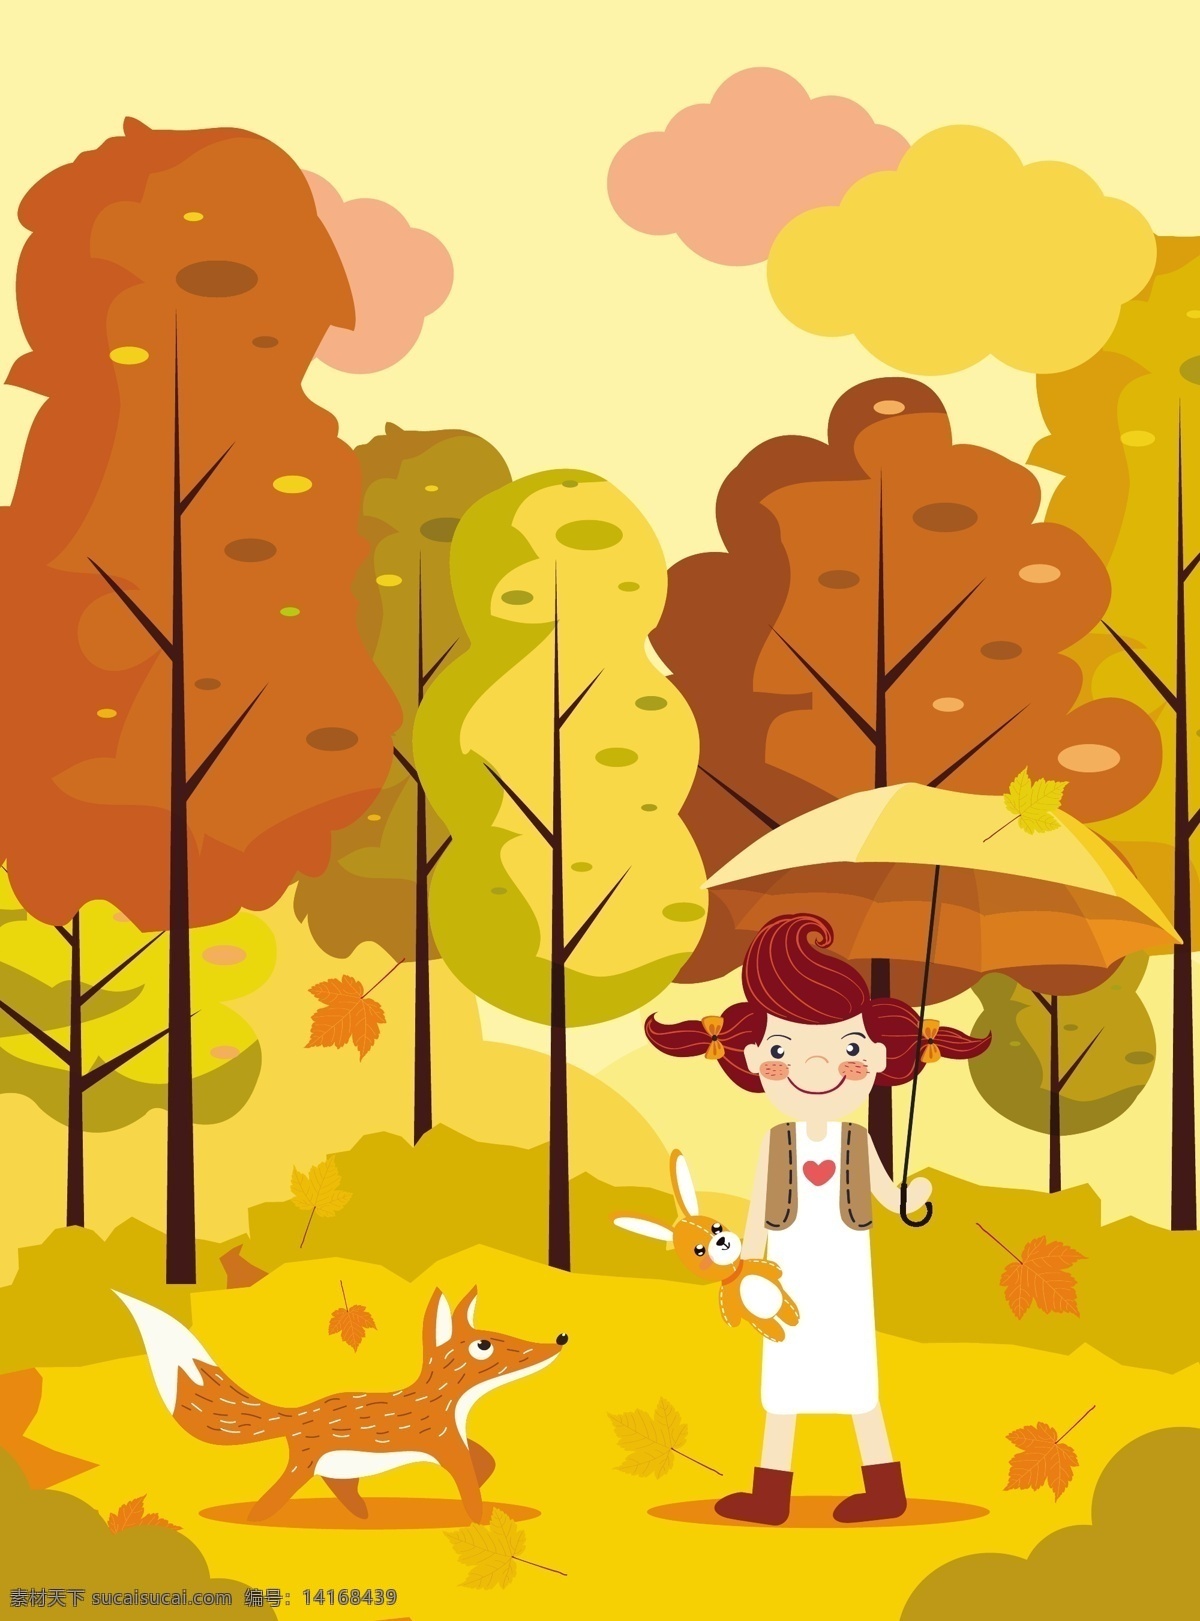 黄色 树林 卡通 插画 矢量 树木 秋天 矢量素材 狐狸 女孩 兔子 伞 黄色树林 落叶